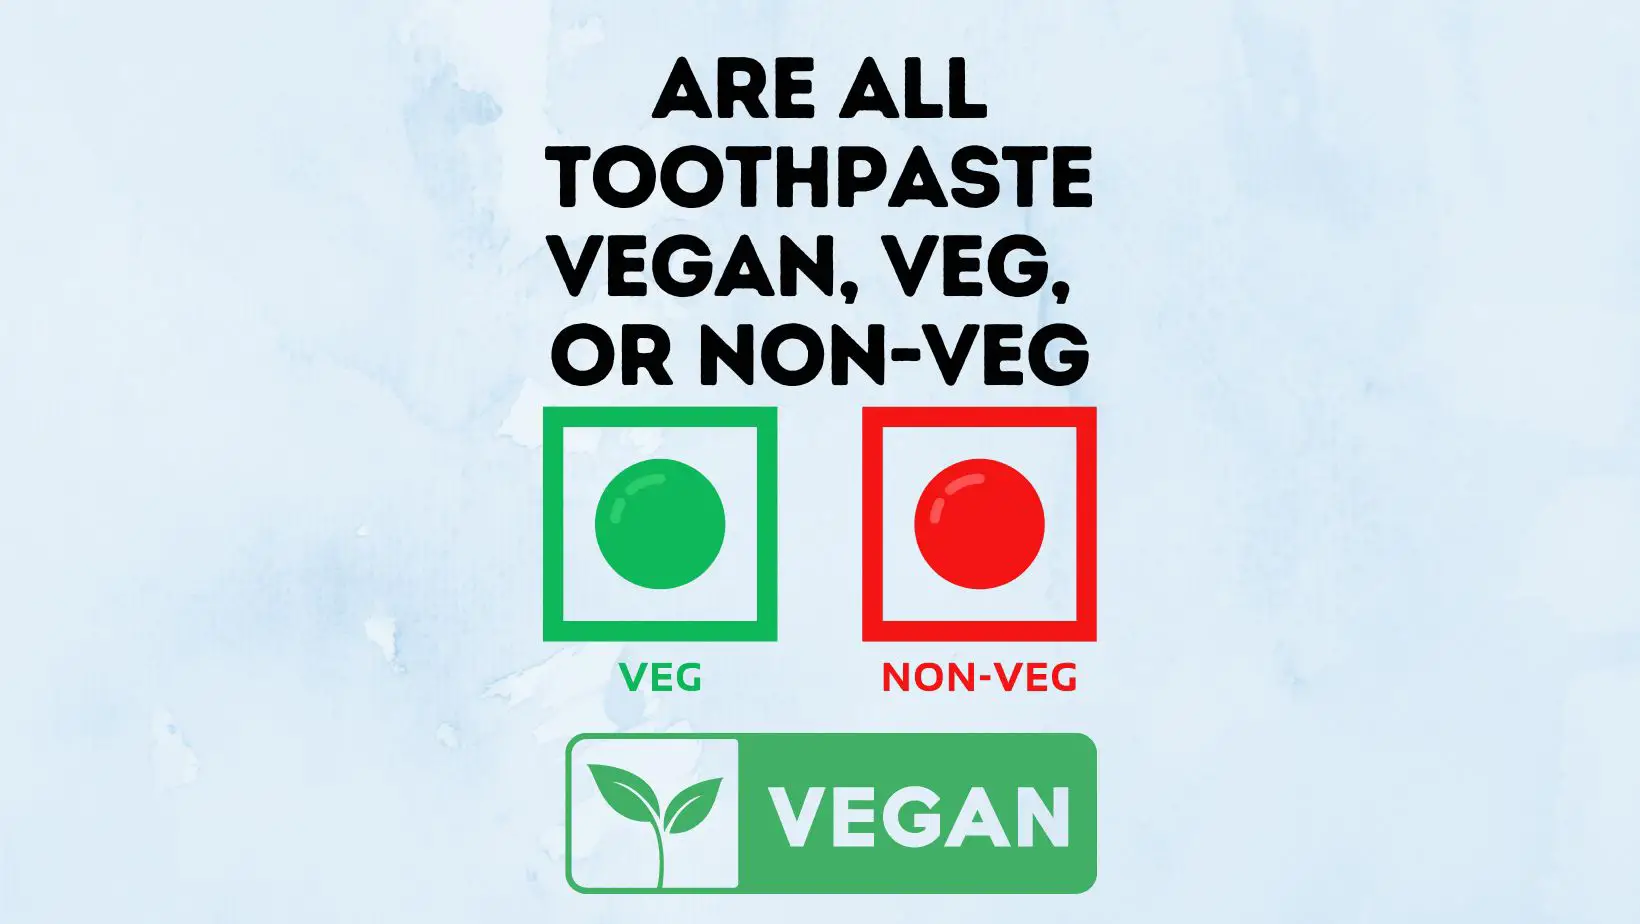 Are All Toothpaste Vegan, Veg, or Non-Veg